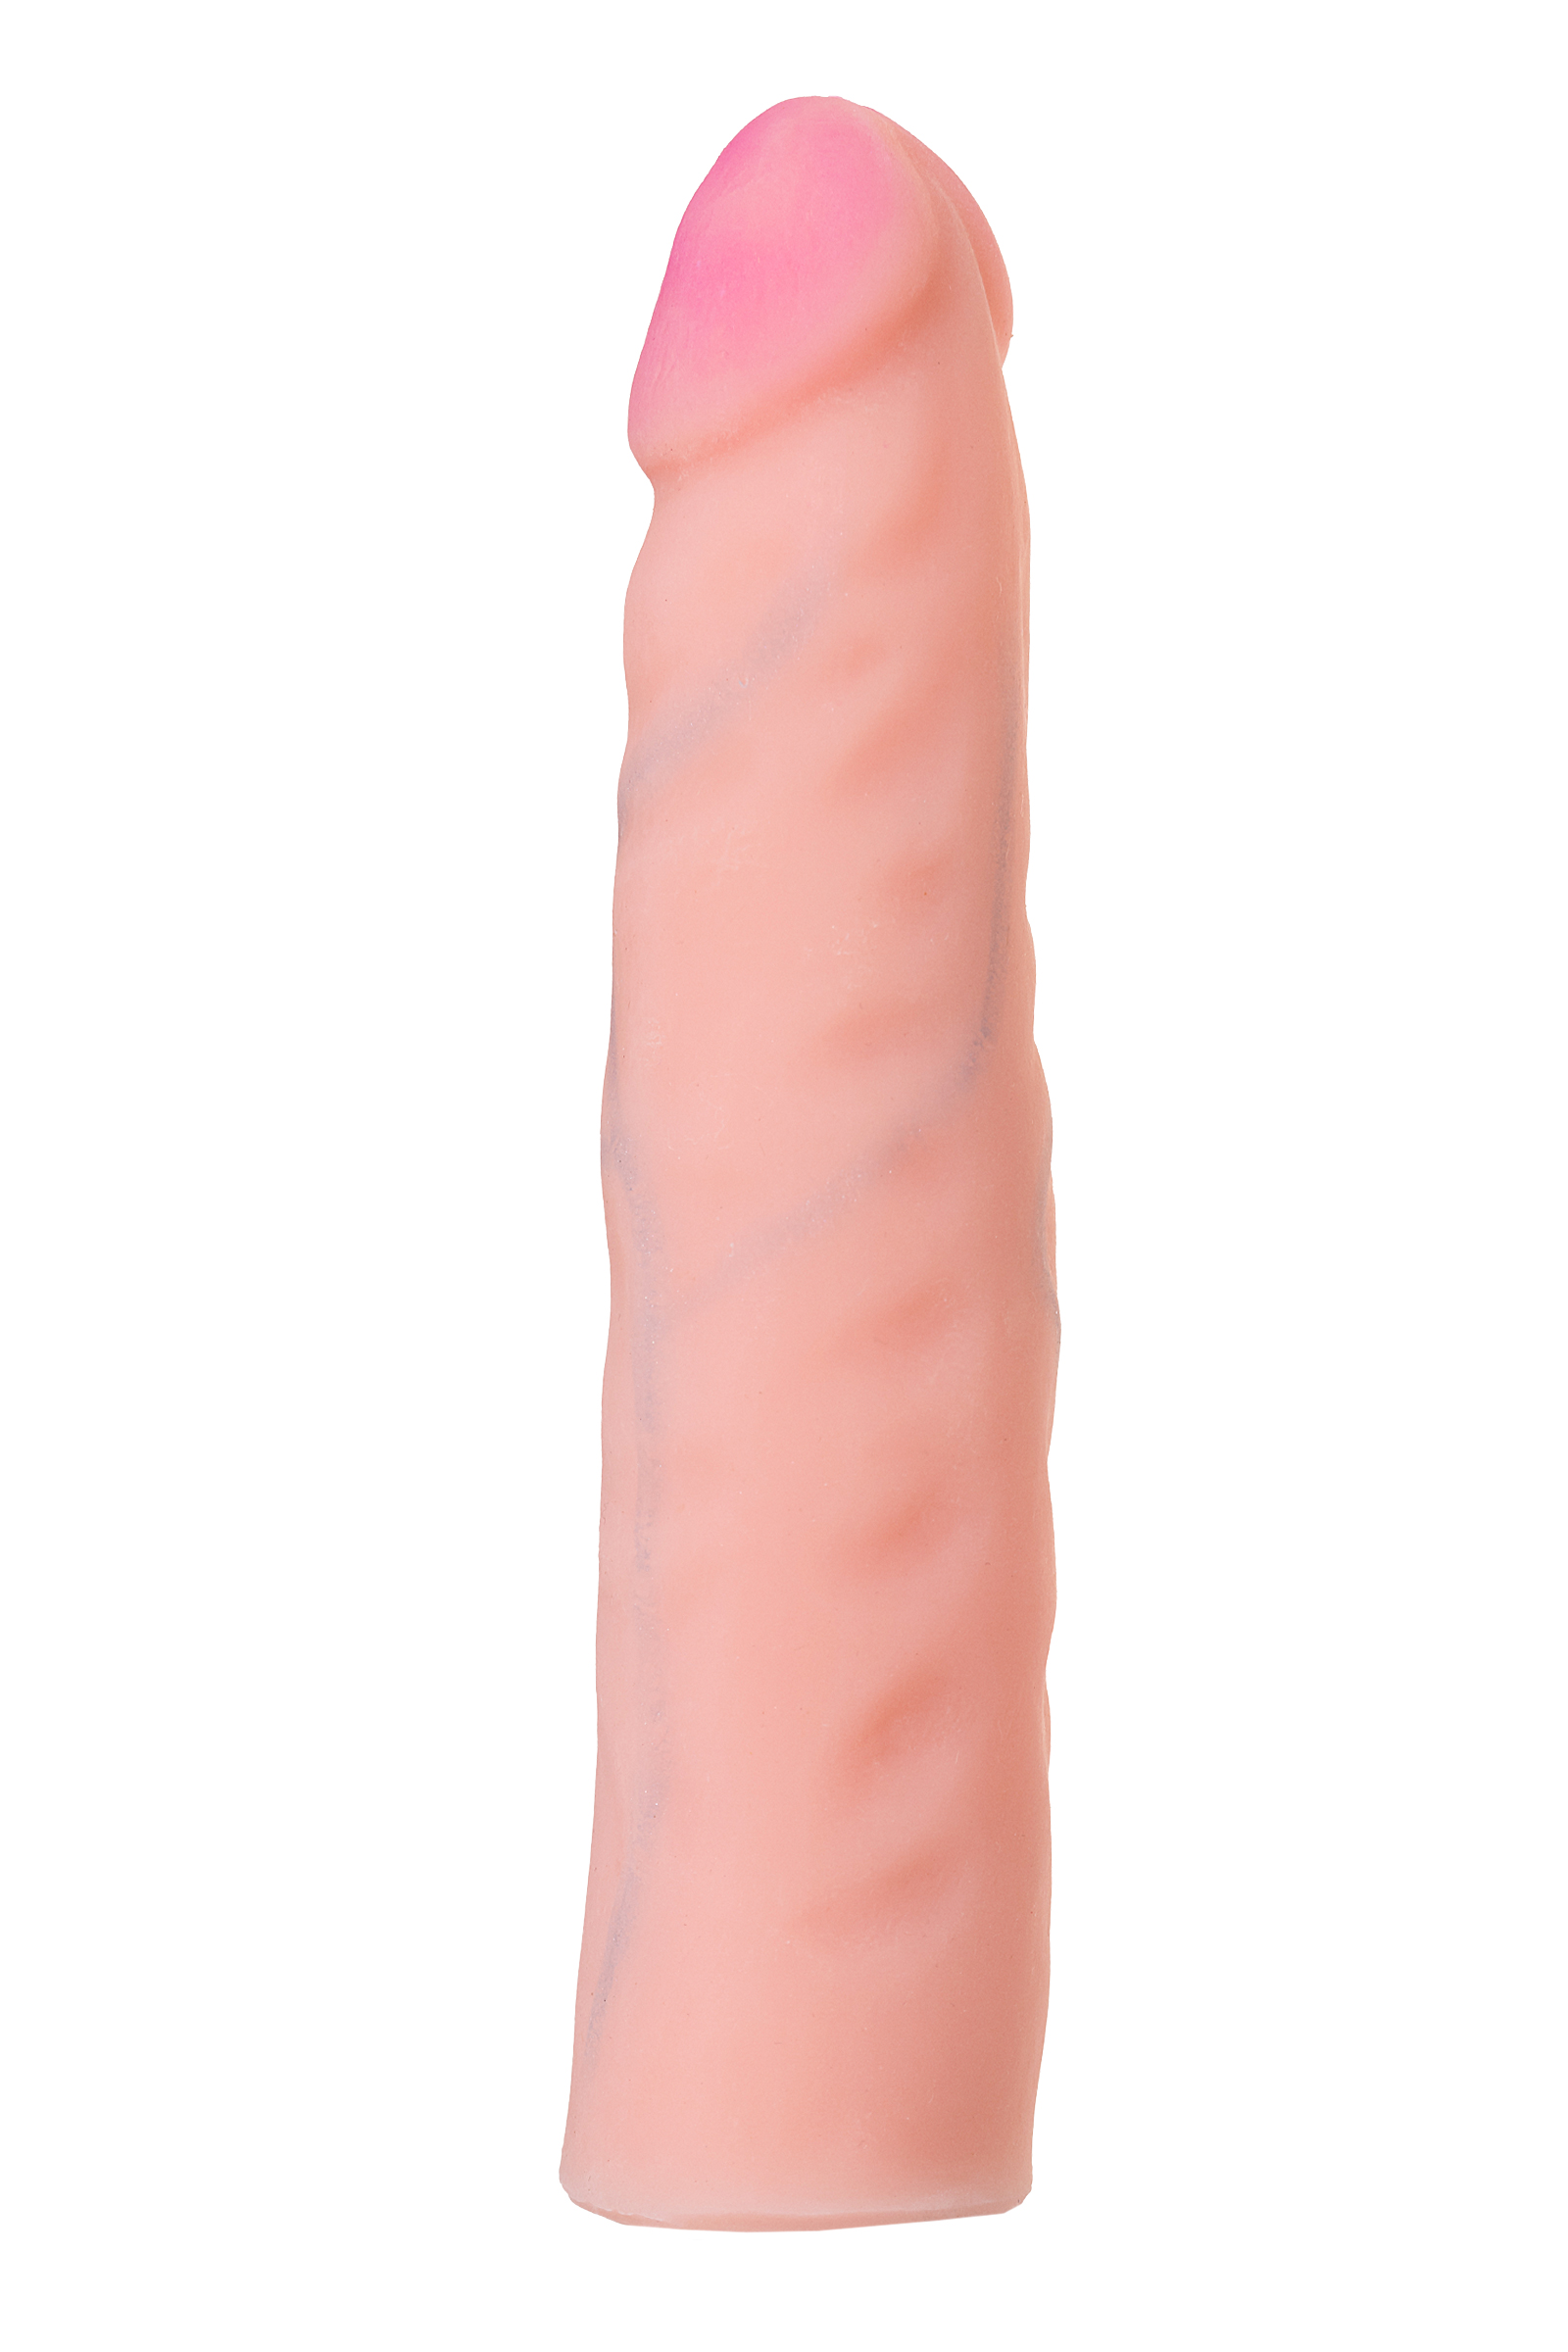 Страпон LoveToy с поясом Harness, с 2 насадками, реалистичный, neoskin, телесный, 18 см. Фото N10